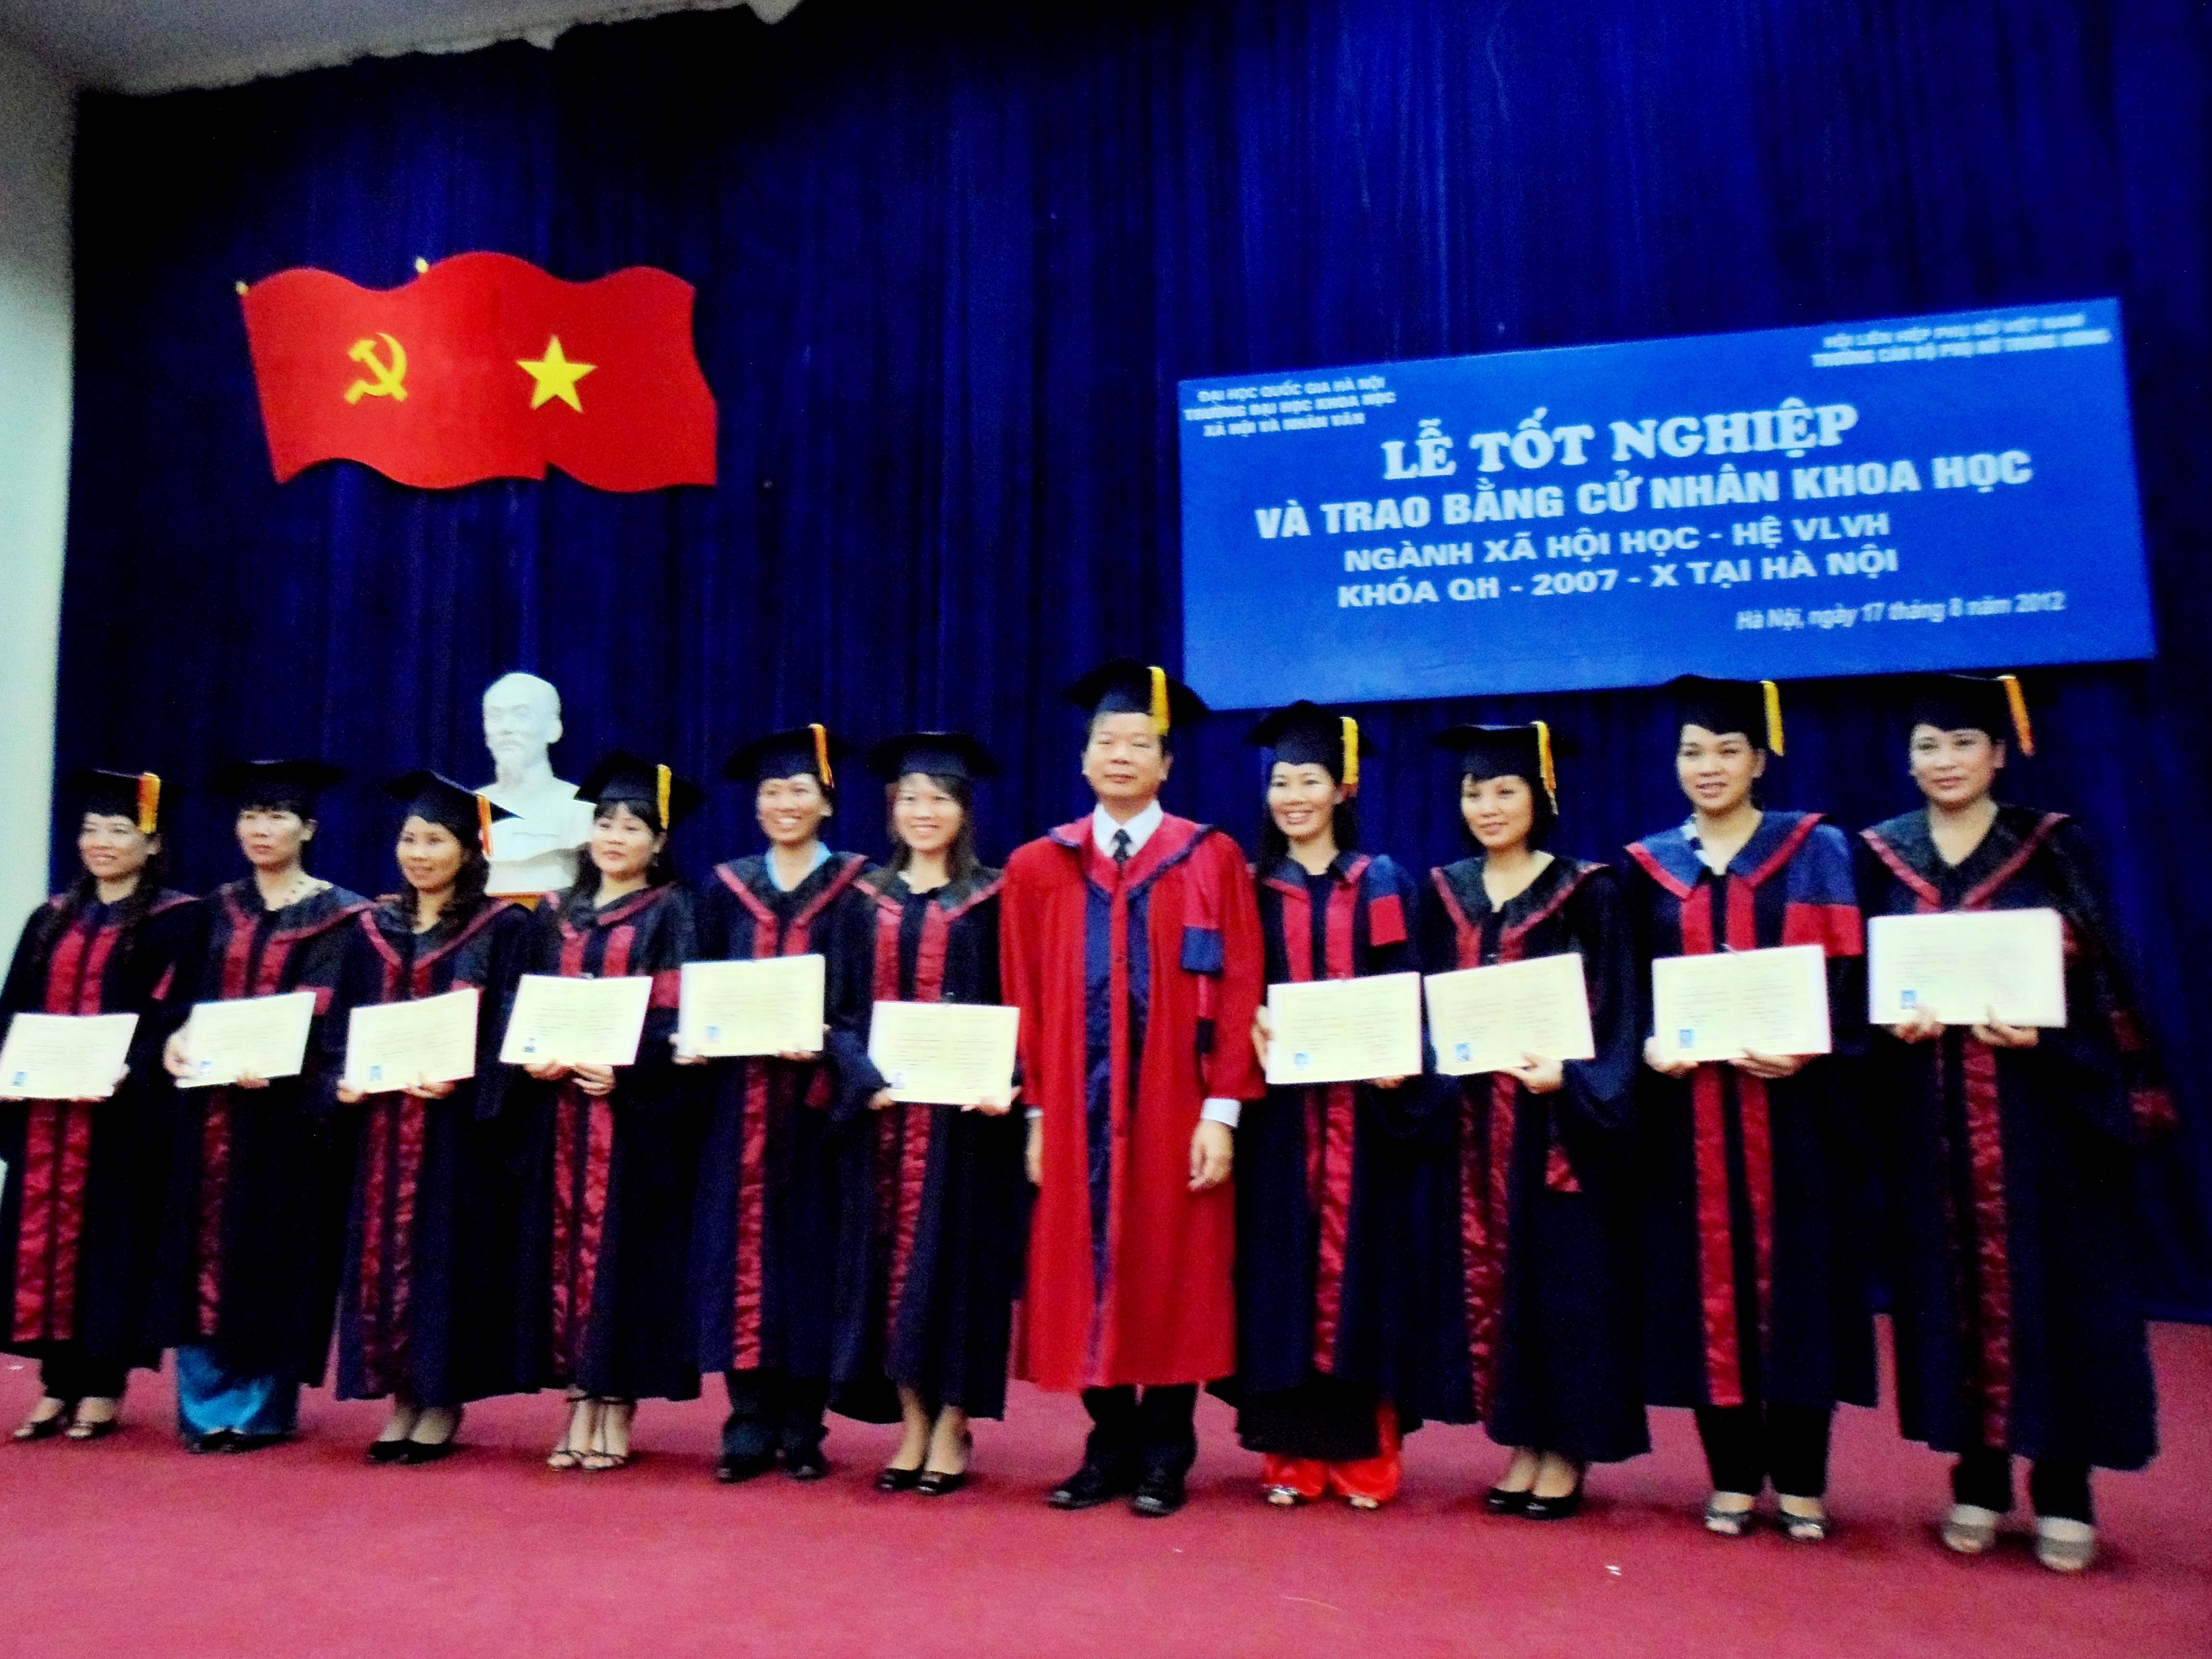 Lễ tốt nghiệp và trao bằng Cử nhân khoa học ngành Xã hội học hệ VLVH khóa QH – 2007 – X tại Hà Nội